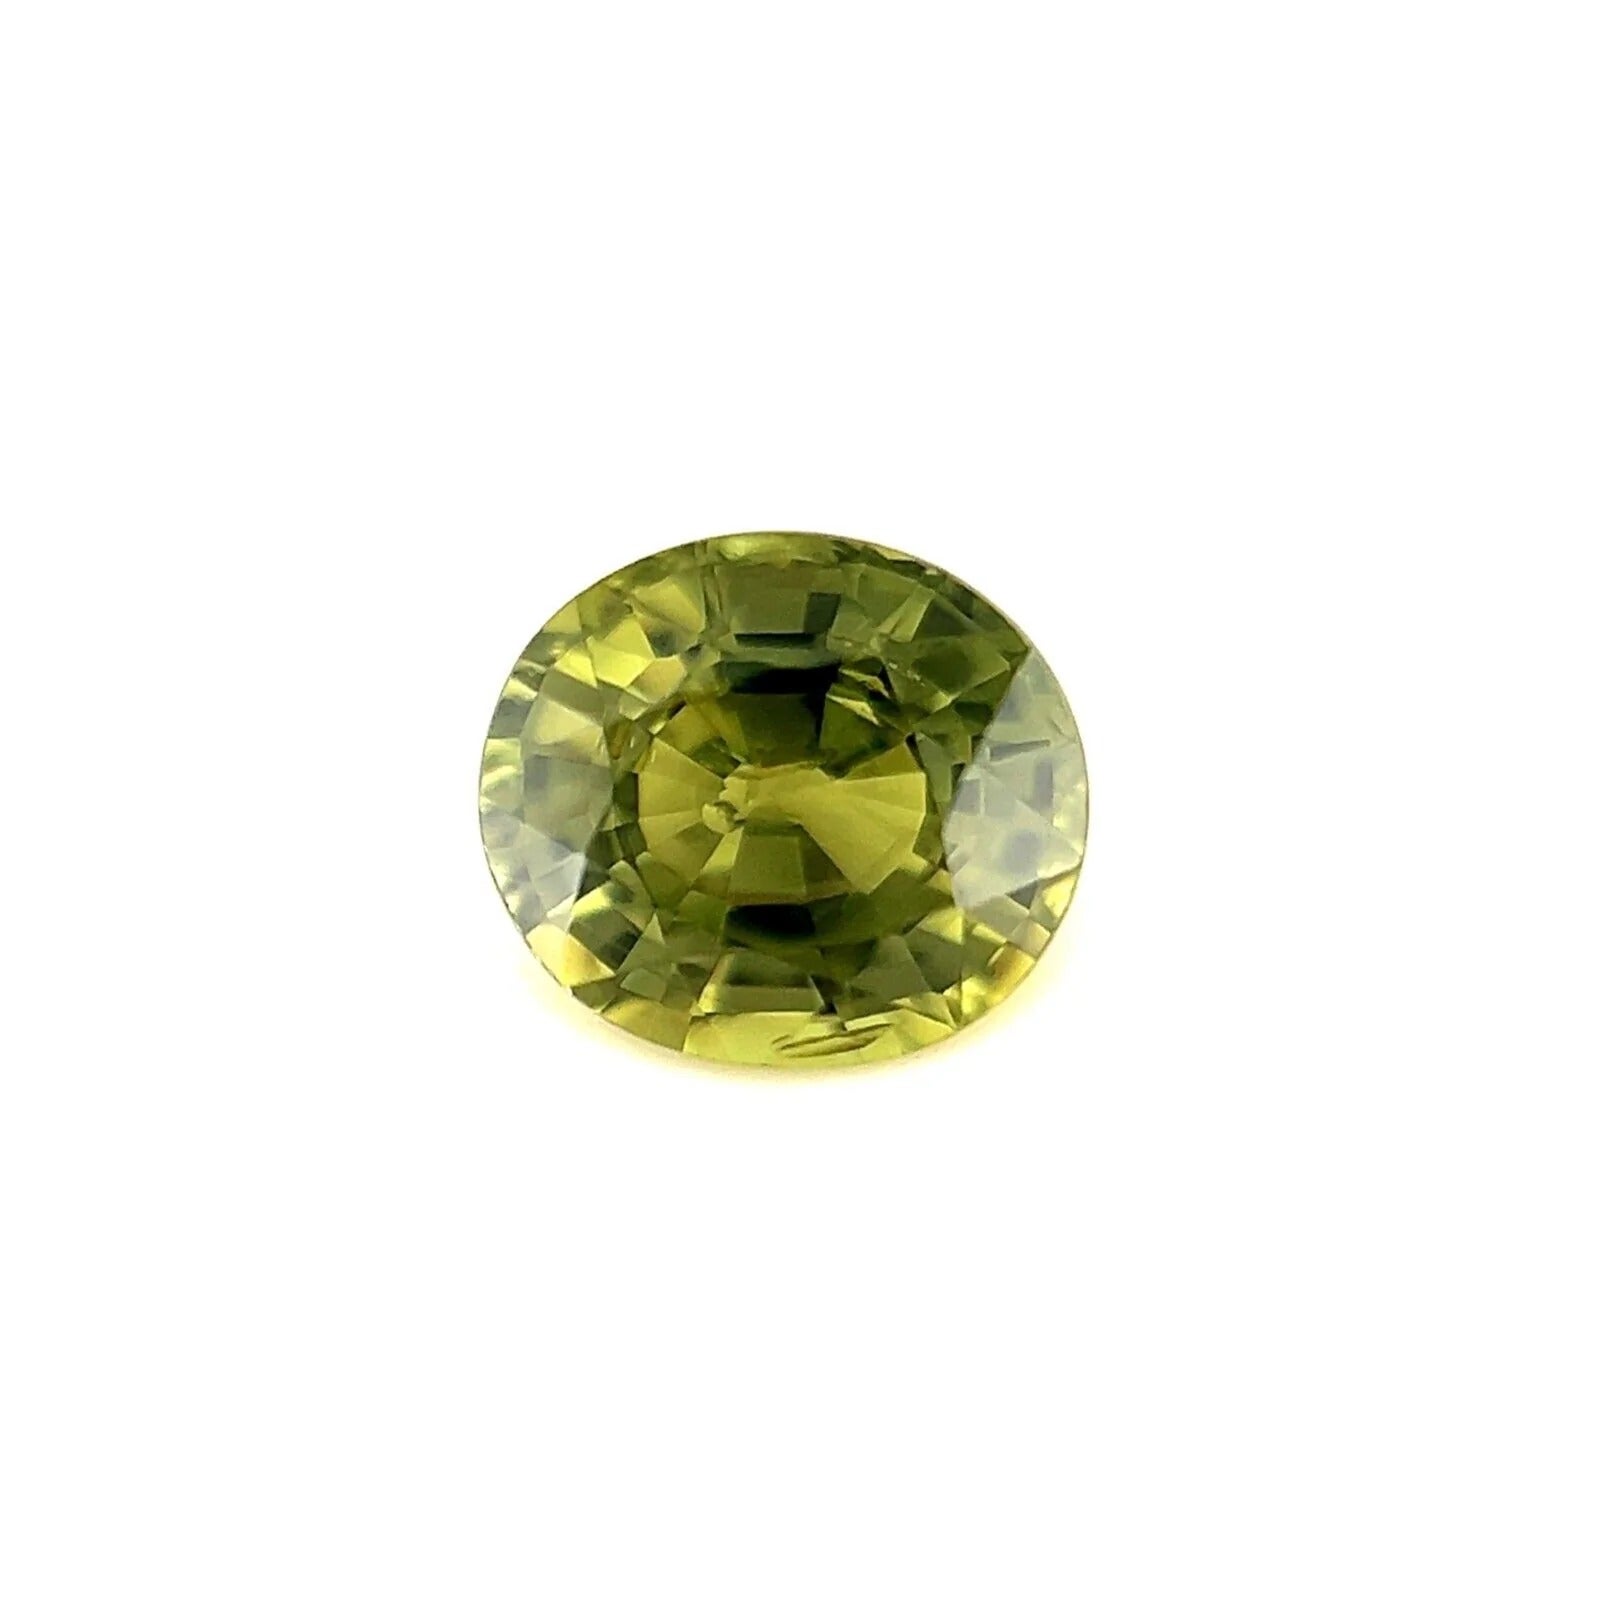 Unique Colour 0.95ct Rare Yellow Green Australian Sapphire Oval Cut 5.8x5.2mm